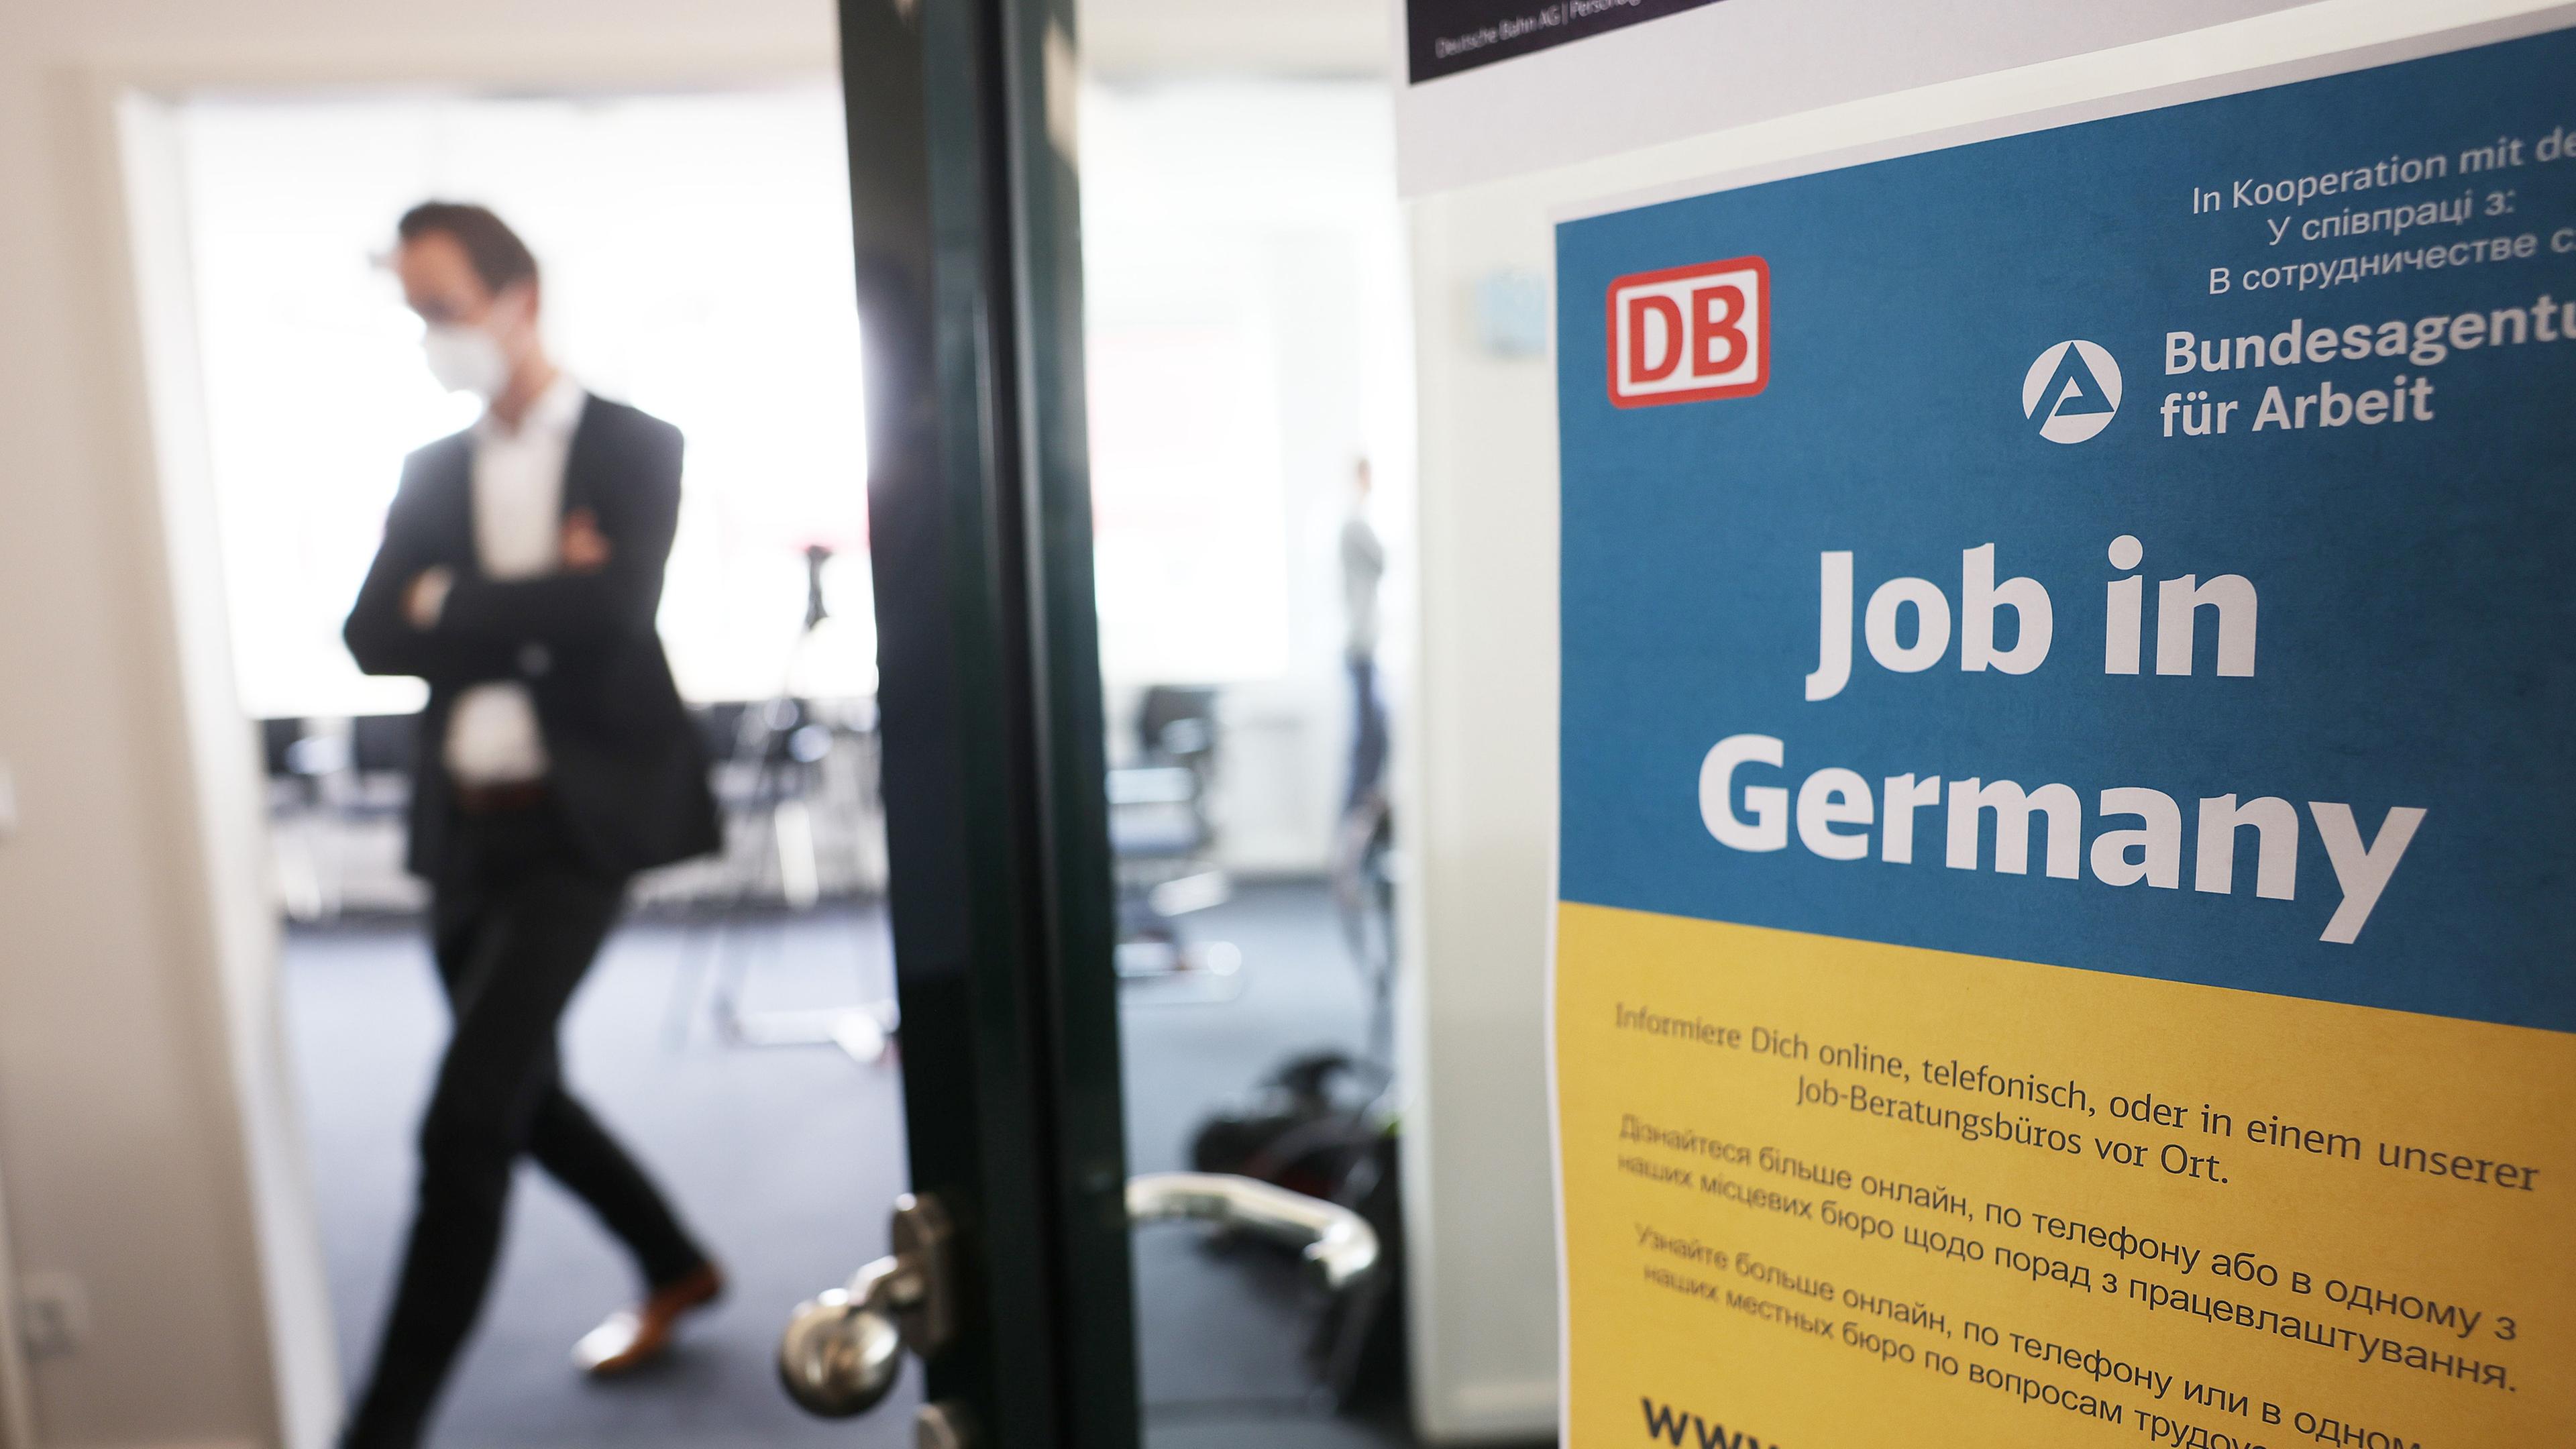 Ein Mann geht in einem Jobberatungszentrum am Hauptbahnhof an einem Plakat mit der Aufschrift "Job in Germany" vorbei